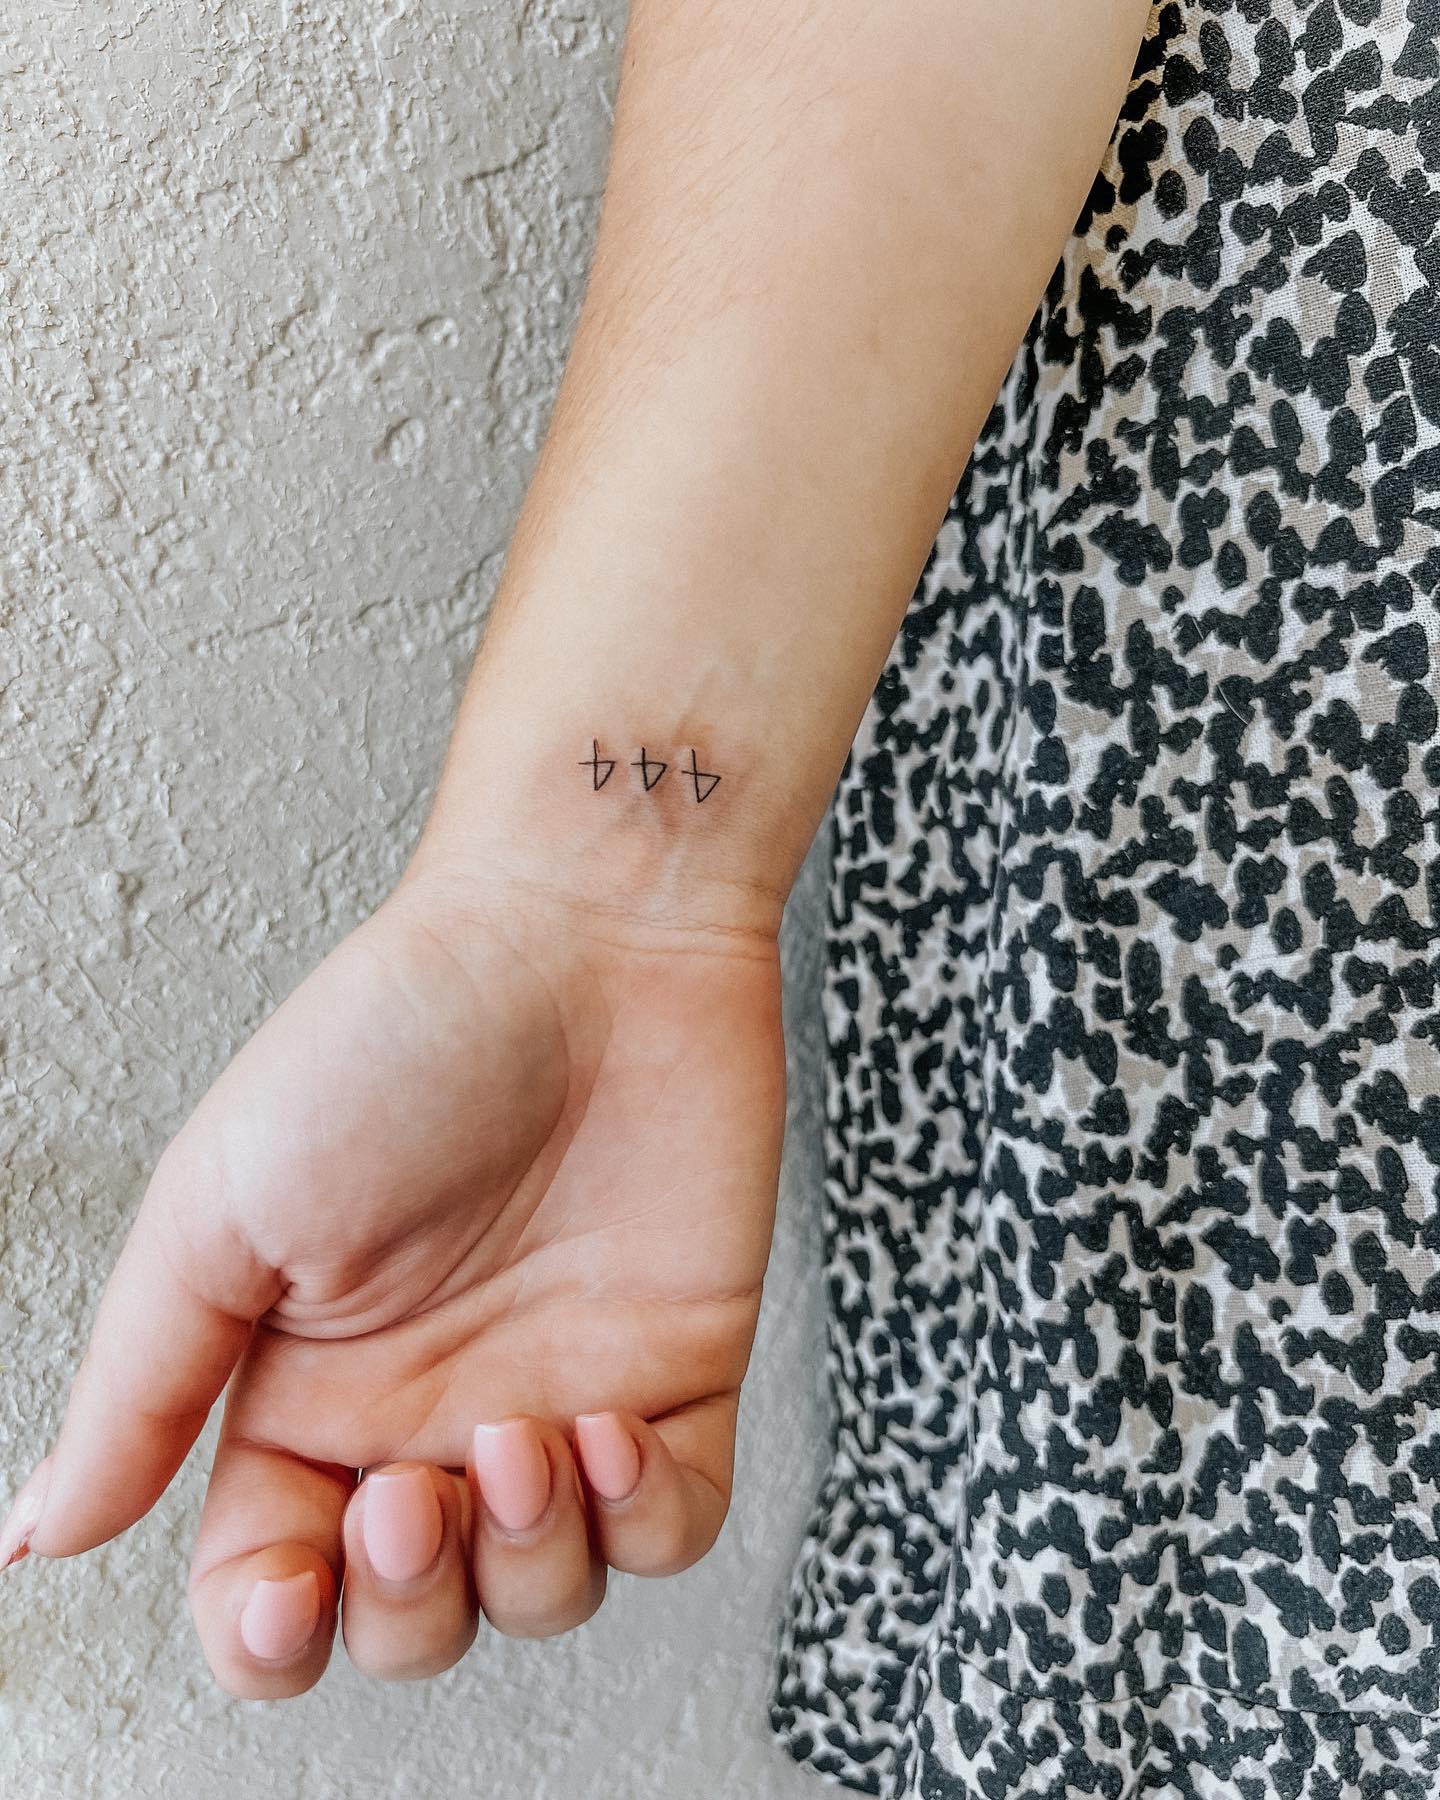 30+ Wrist Tattoos for Women: Minimalist and Cute Ideas - 100 Tattoos